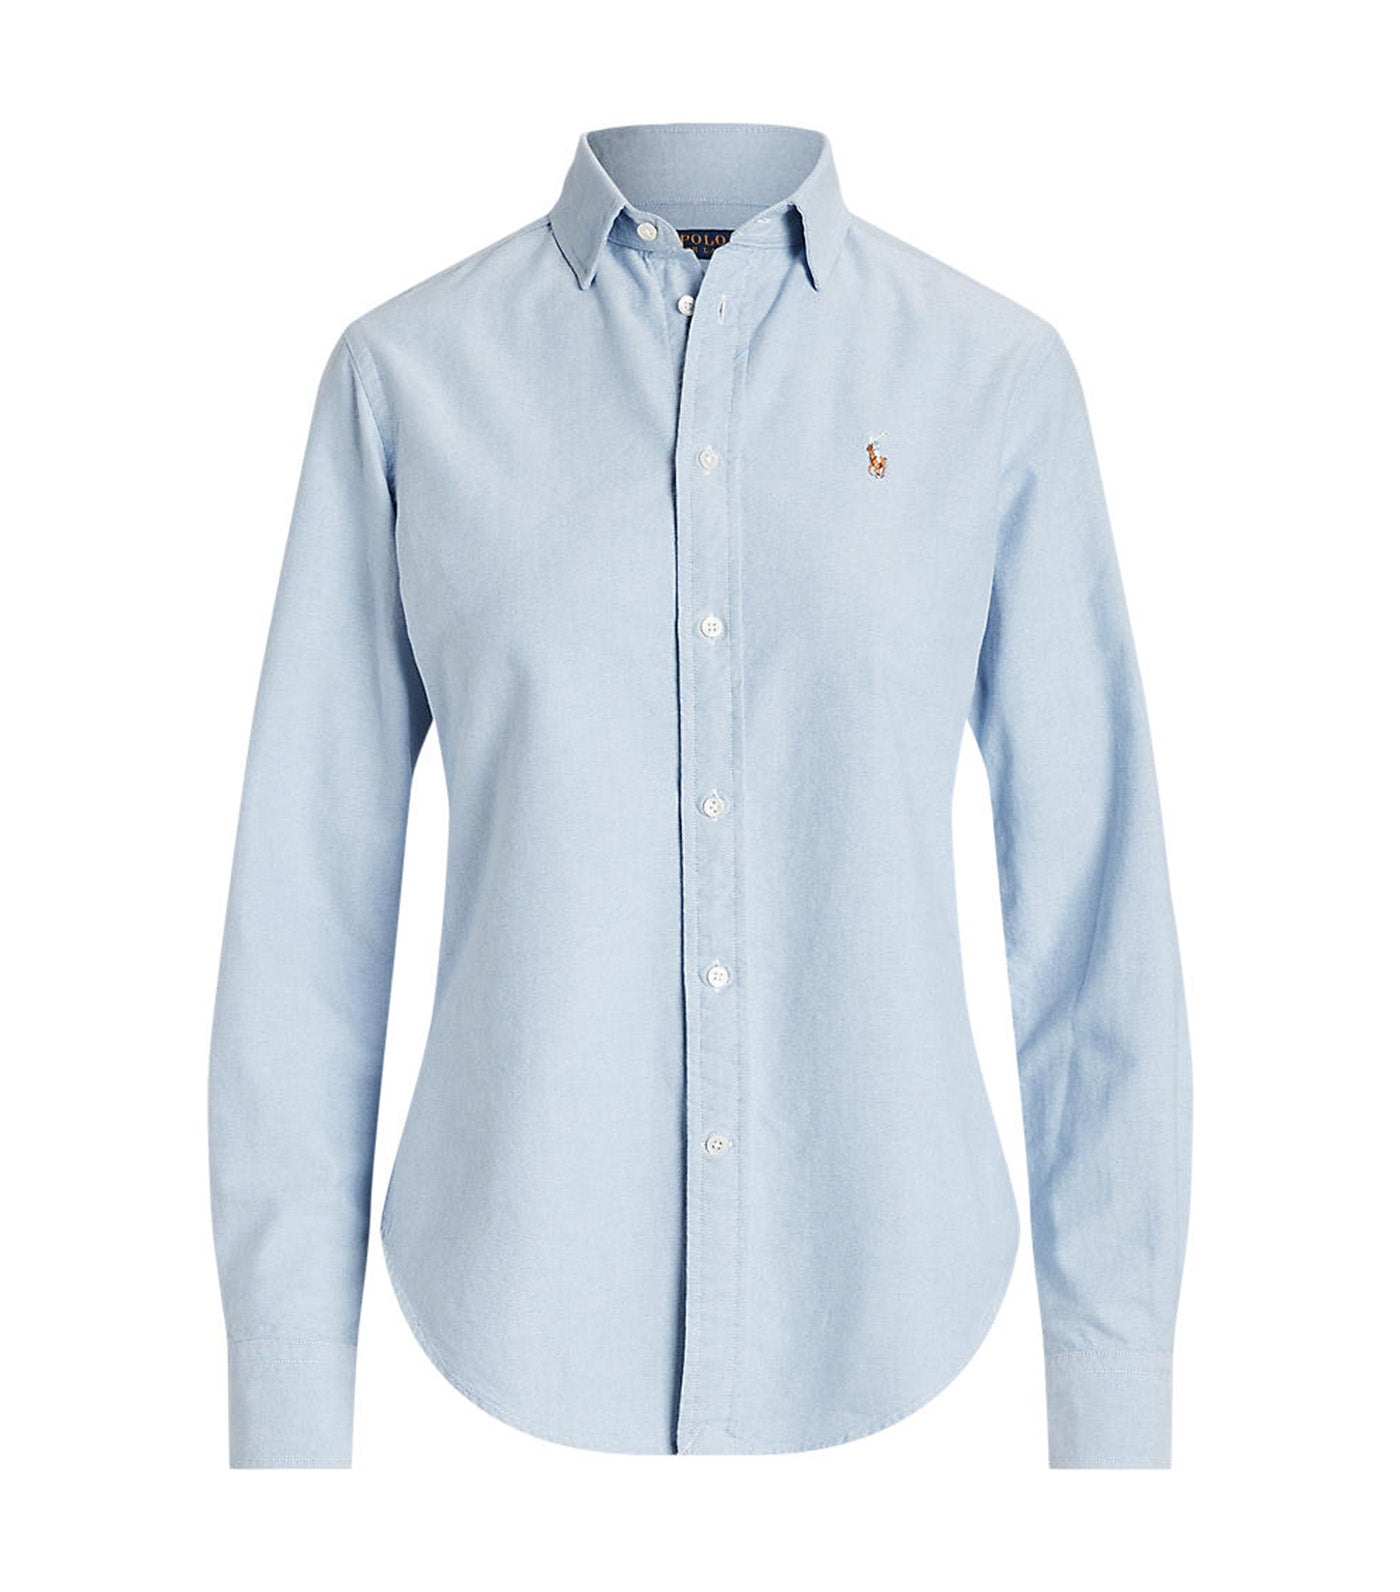 White Oxford shirt Modern fit, Le 31